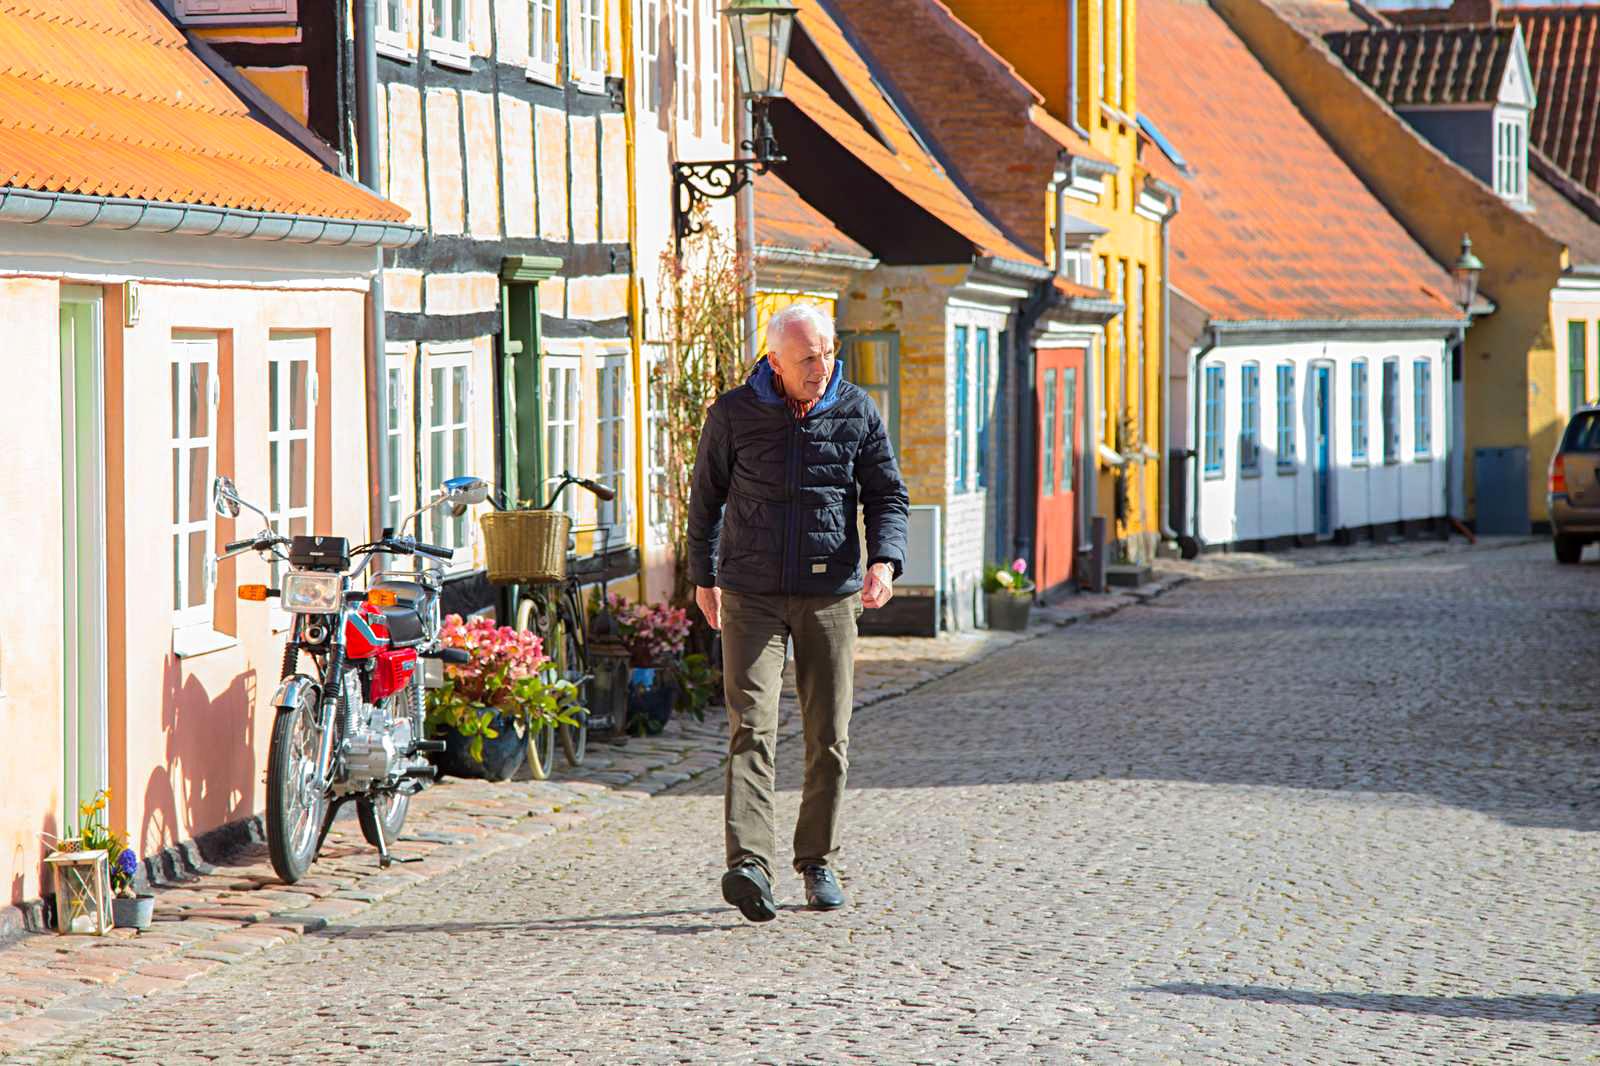 Jørgen Otto er født og opvokset på Ærø og elsker sin ø. Men han glæder sig også til at få mere tid til at se verden udenfor øen.
Foto: Joan Lykke Ammersbøll